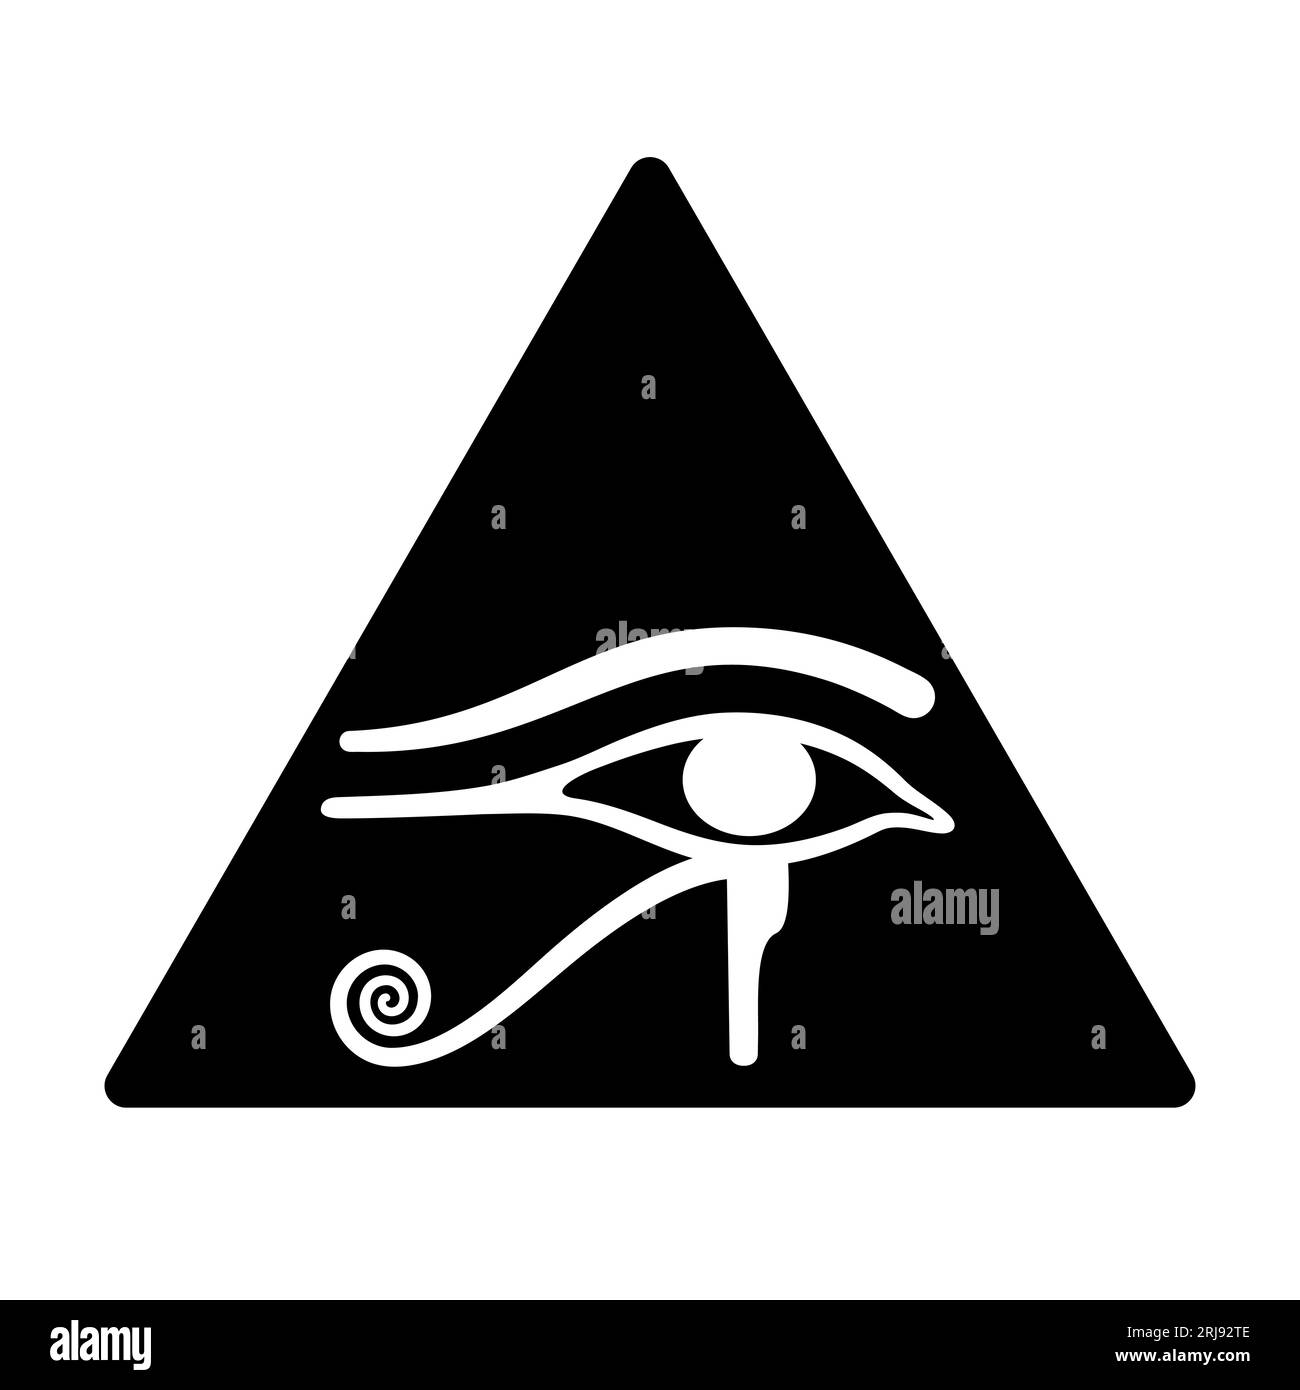 Das Auge des Horus in einem schwarzen Dreieck. Altägyptisches Symbol für Schutz, königliche Macht und gute Gesundheit, personifiziert in Göttin Wadjet. Alles Sehendes Auge. Stockfoto